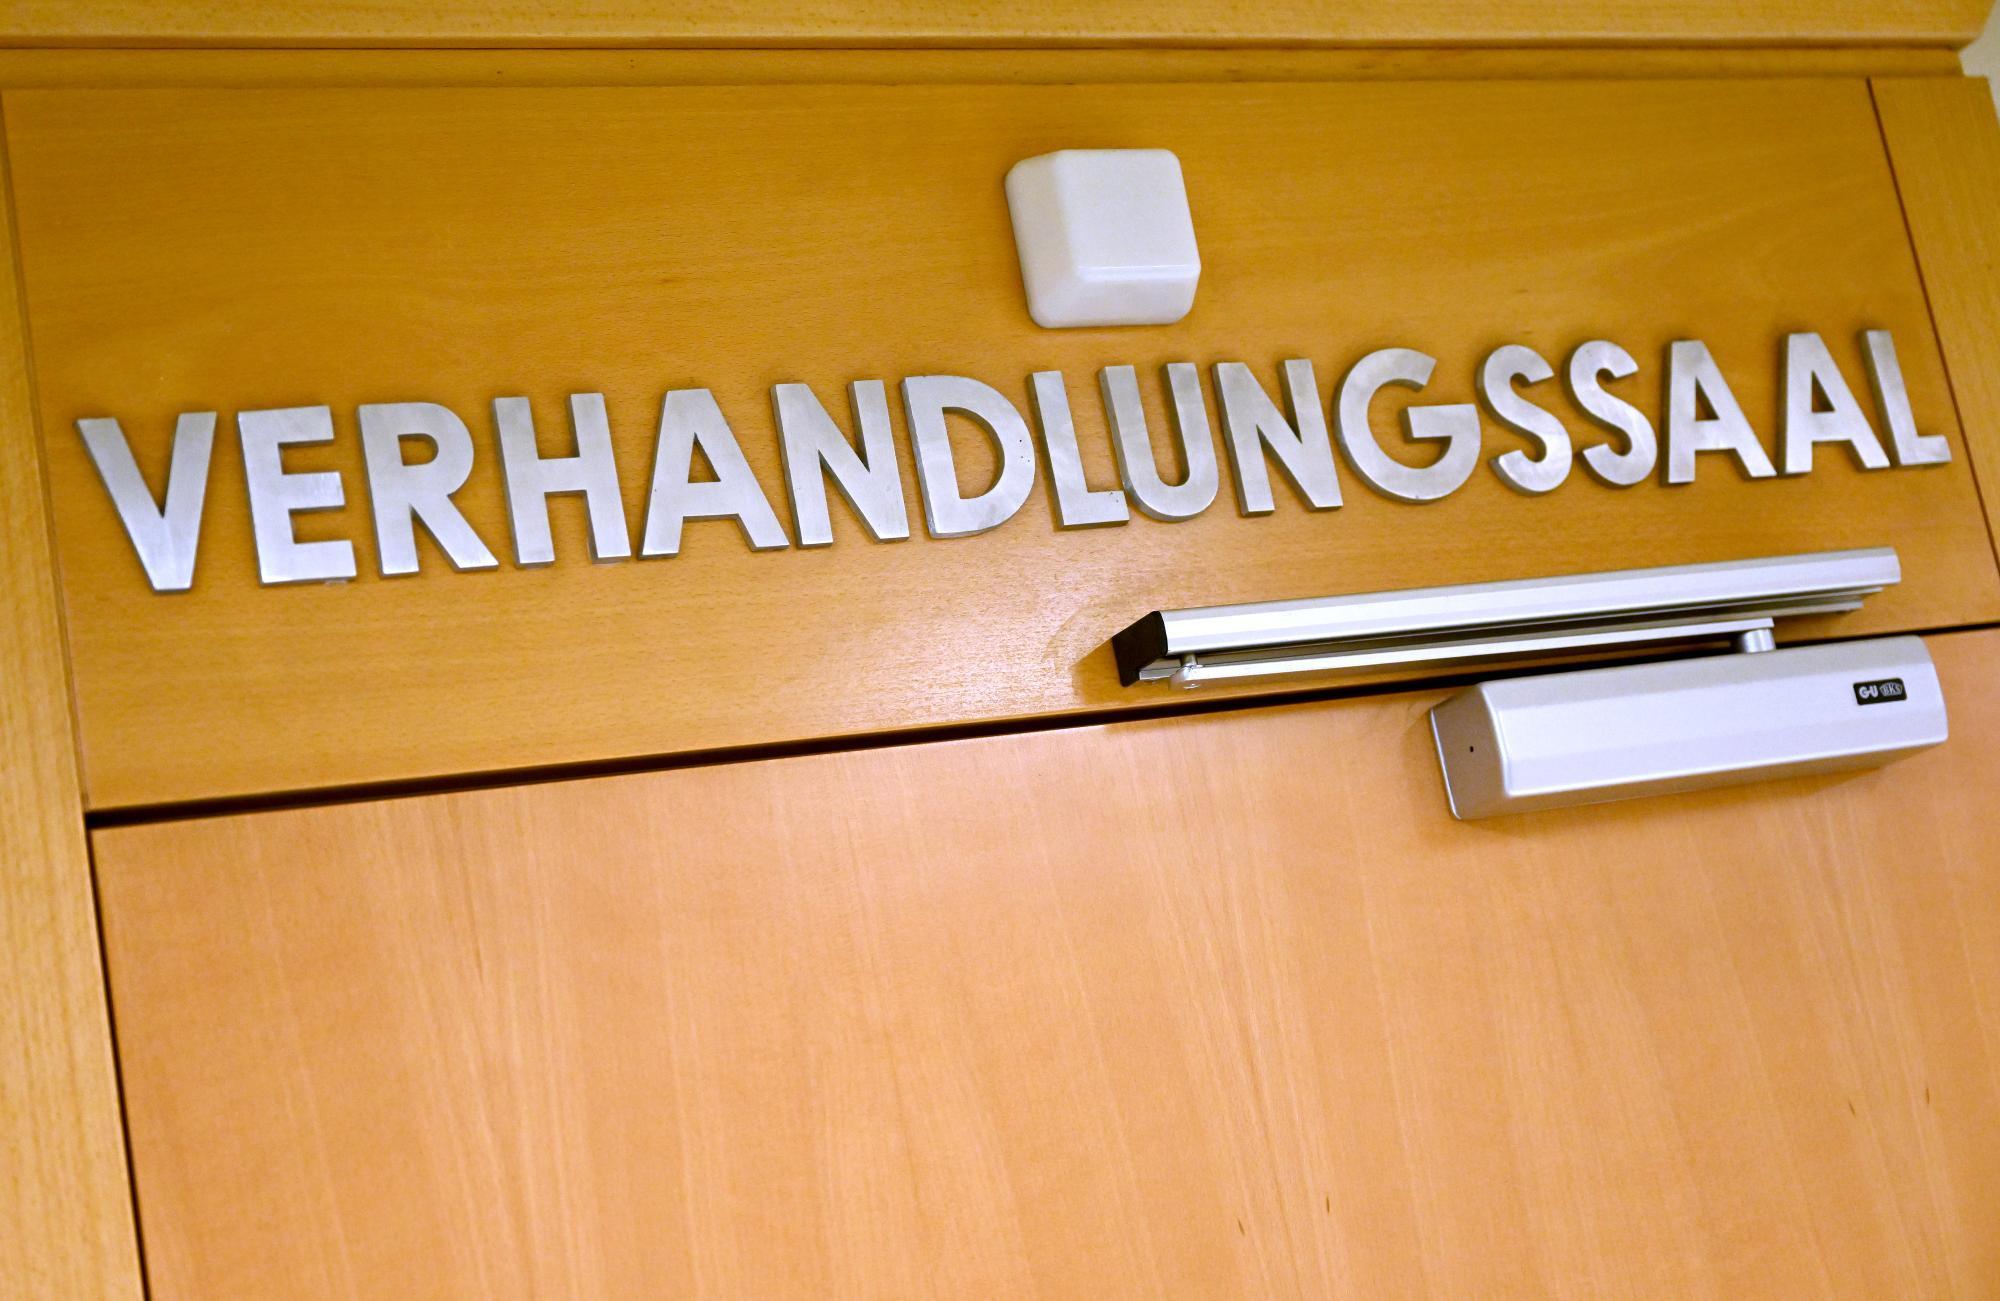 Betrug flog durch FPÖ-Finanzaffäre auf: Richter verhängt gemeinnützige Arbeit